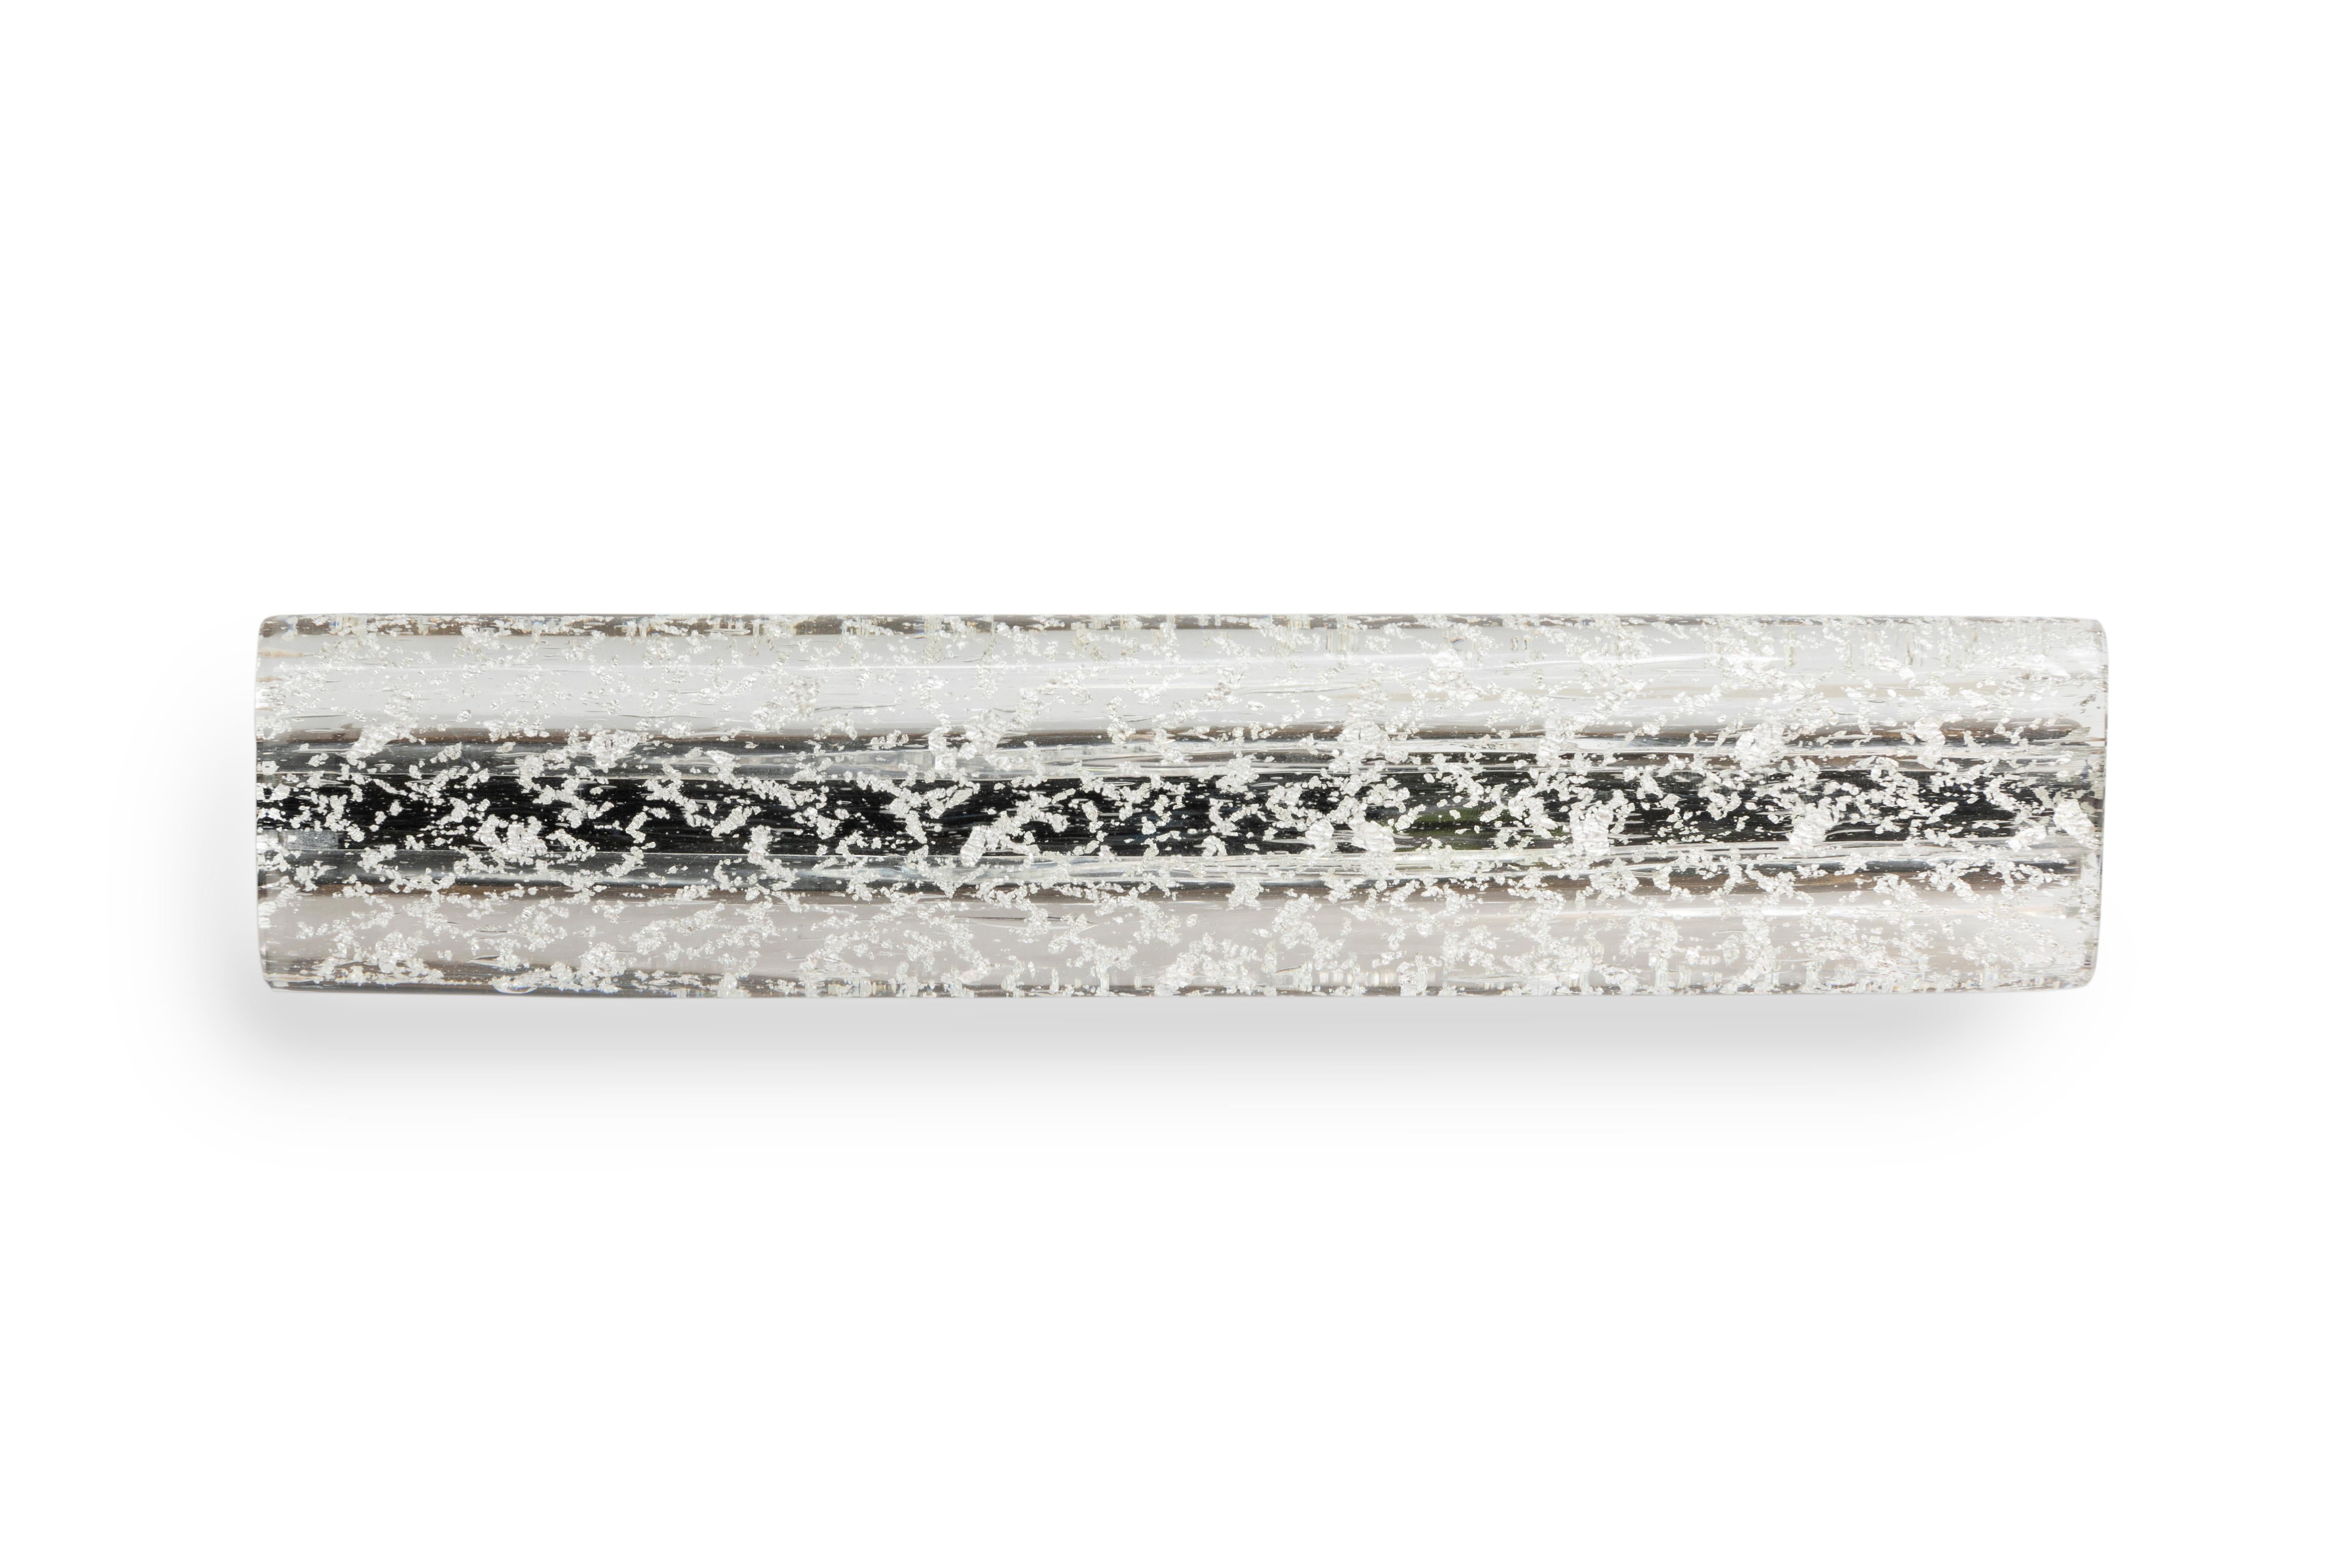 La tirette Saturn est une tirette en verre élancée qui utilise la technique Sommerso en couches. La tirette convient à une large gamme d'applications intérieures, y compris les armoires, la menuiserie spécialisée, les placards et les